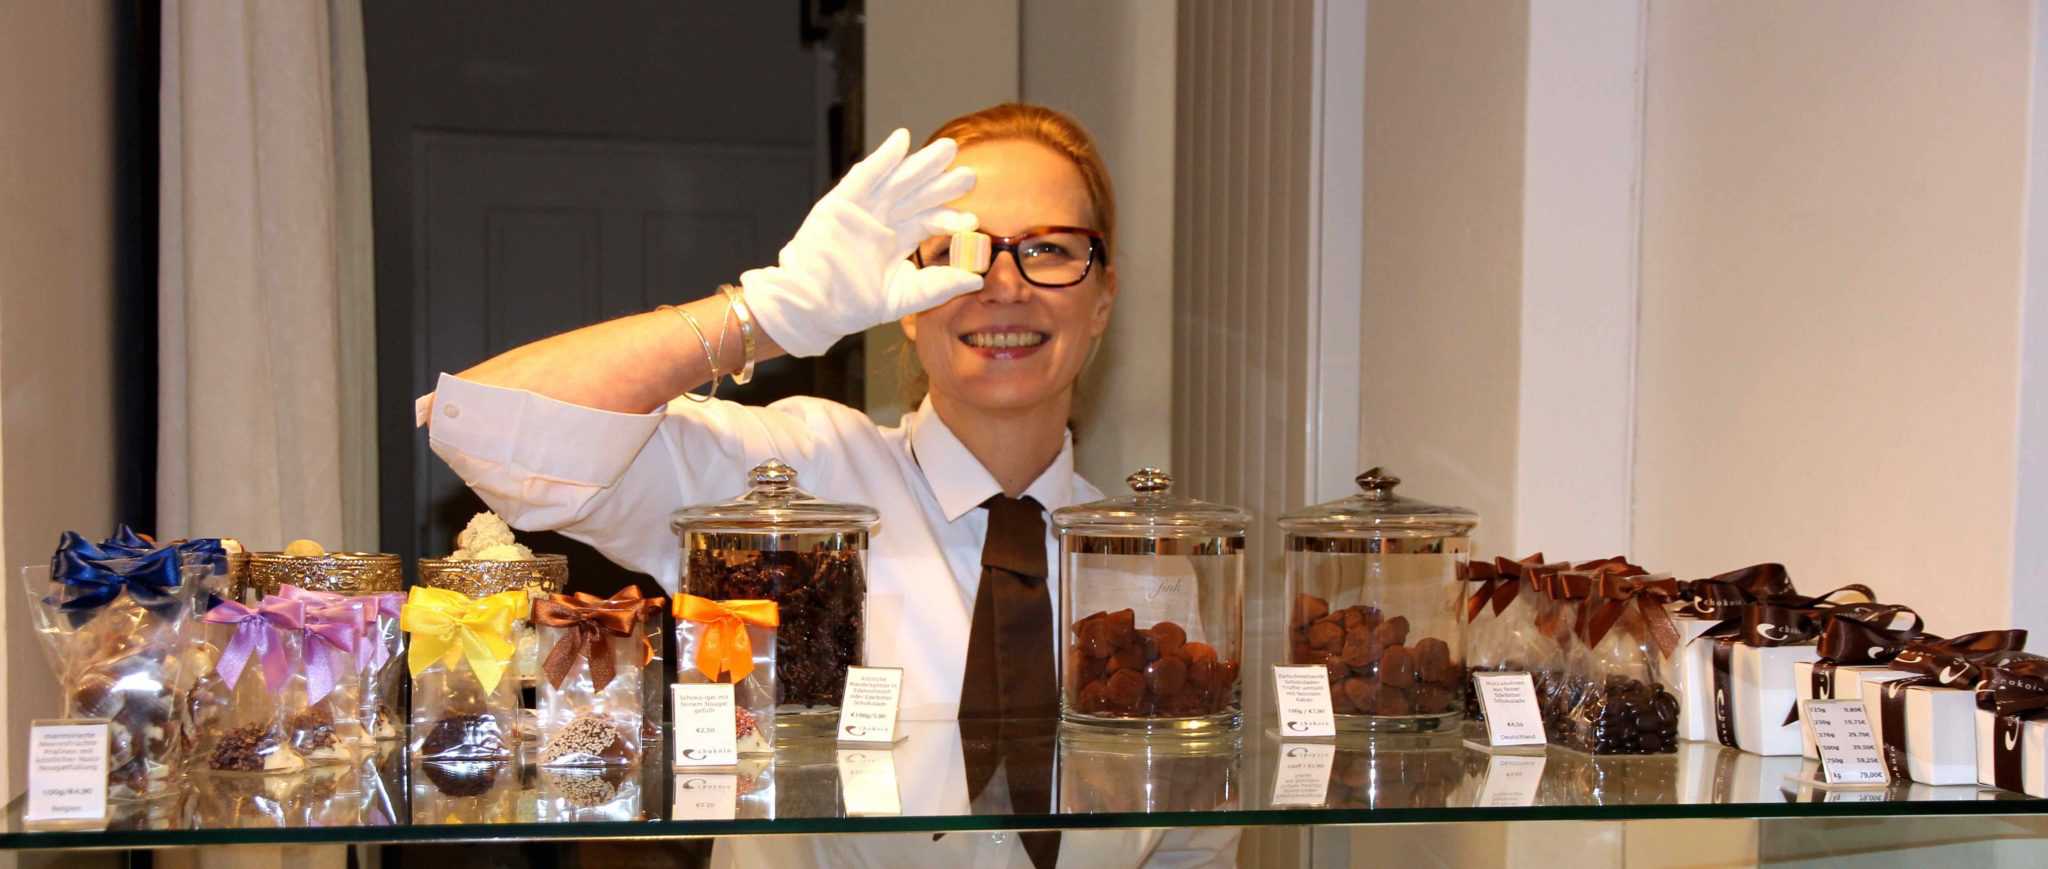 Bettina Sturm interviewt Inhaberin Kerstin Weise von "chokoin - die Schokoladengalerie zu Ihrer Erfolgsgeschichte